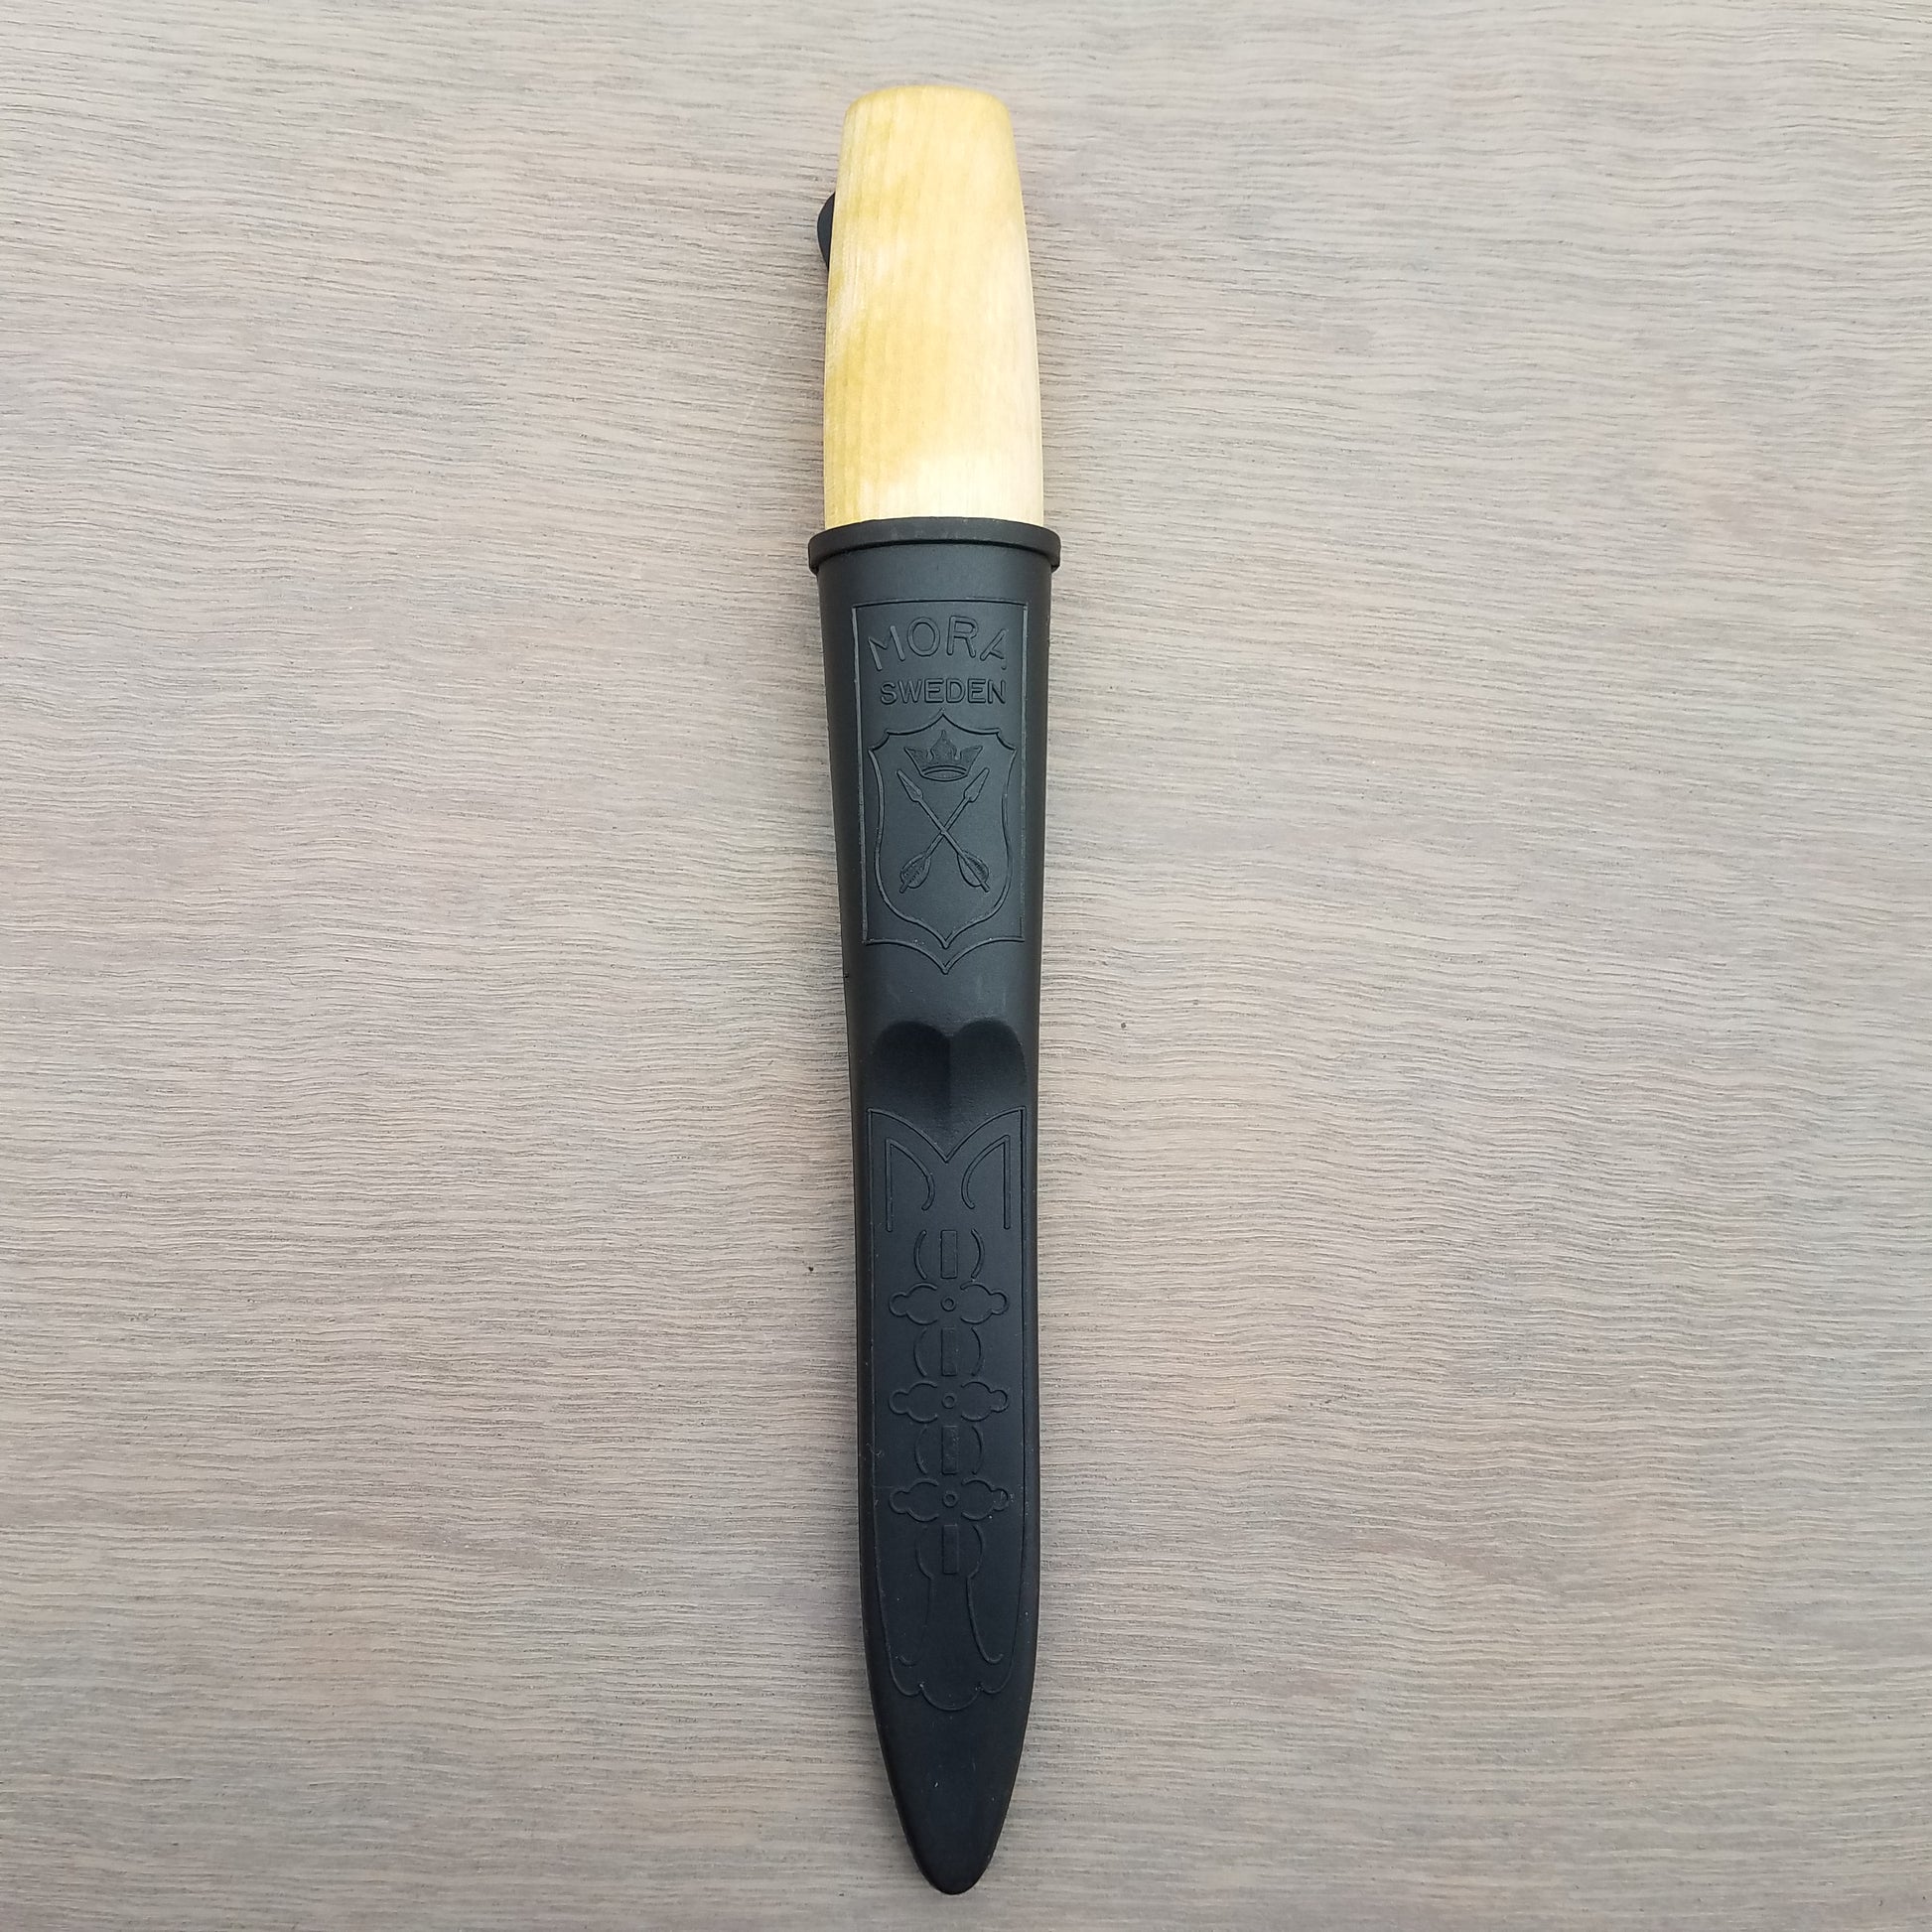 Mora Wood Carving Hook Knife No. 162 ~ Carbon Steel